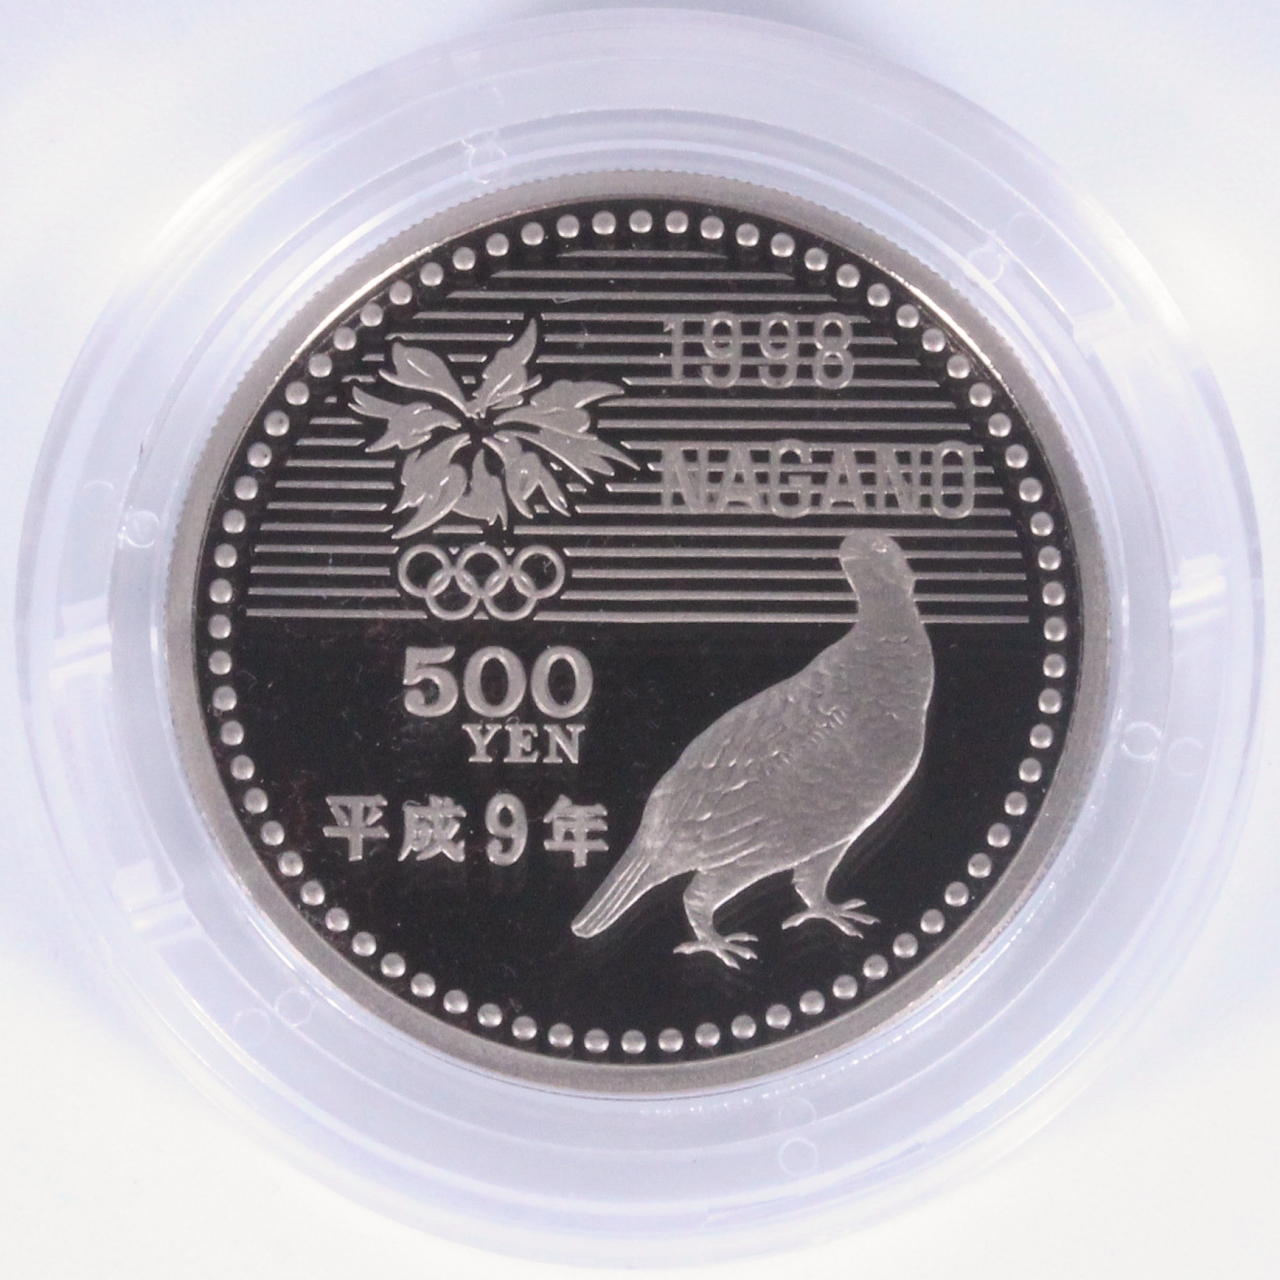 長野オリンピック冬季競技大会記念銀貨✨1997年 - 貨幣